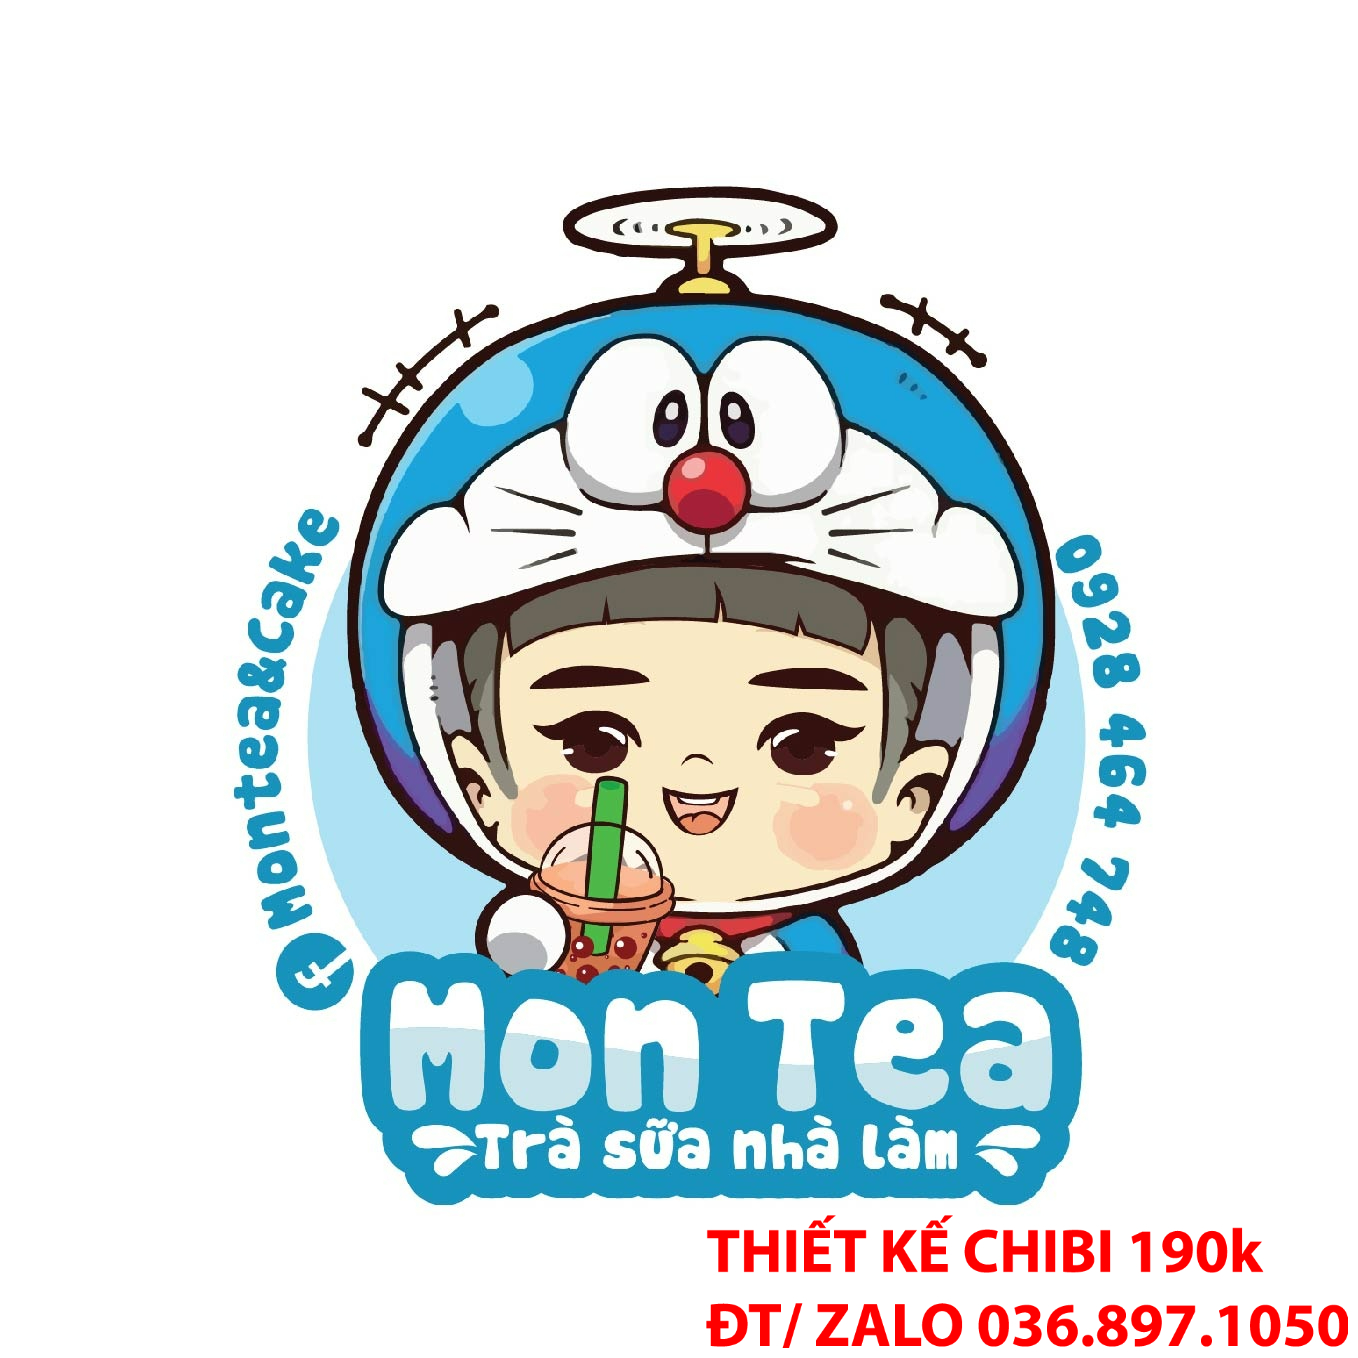 Sự dễ thương của logo chibi trà sữa ăn vặt có thể làm tăng tính gần gũi và thân thiện với khách hàng.